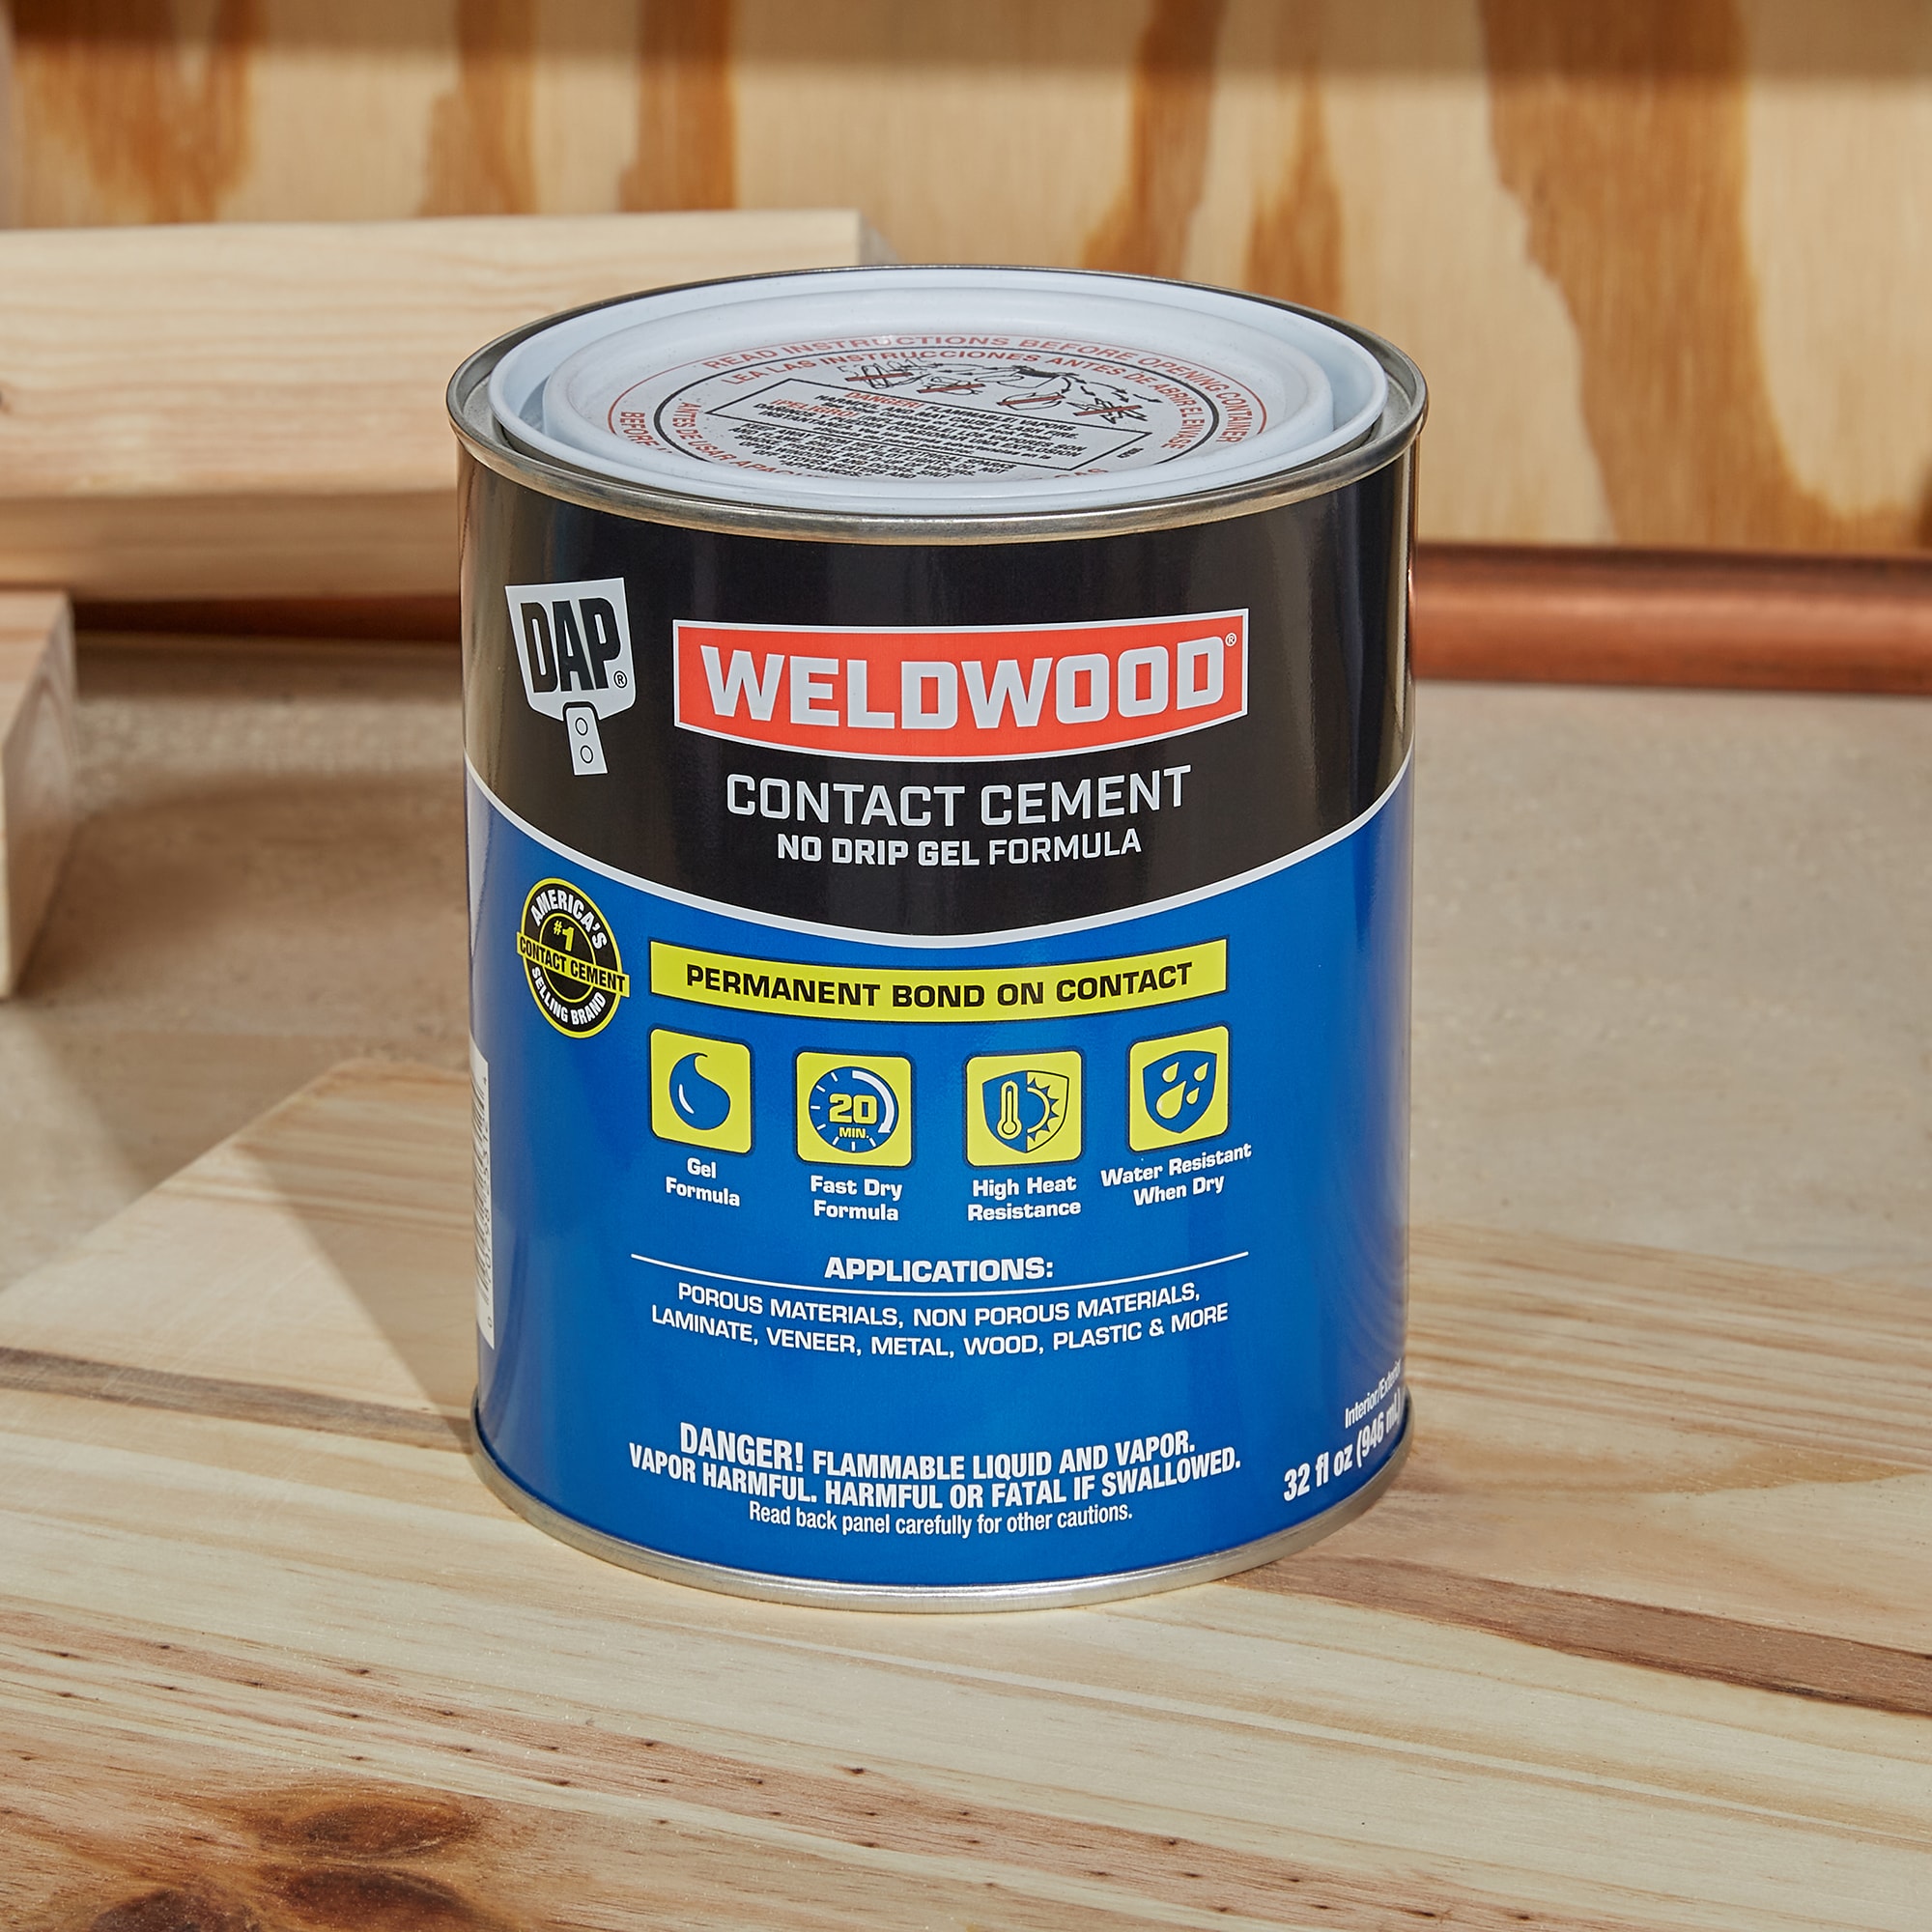 DAP Weldwood 32-fl oz Gel Contact Cement Waterproof, Quick Dry